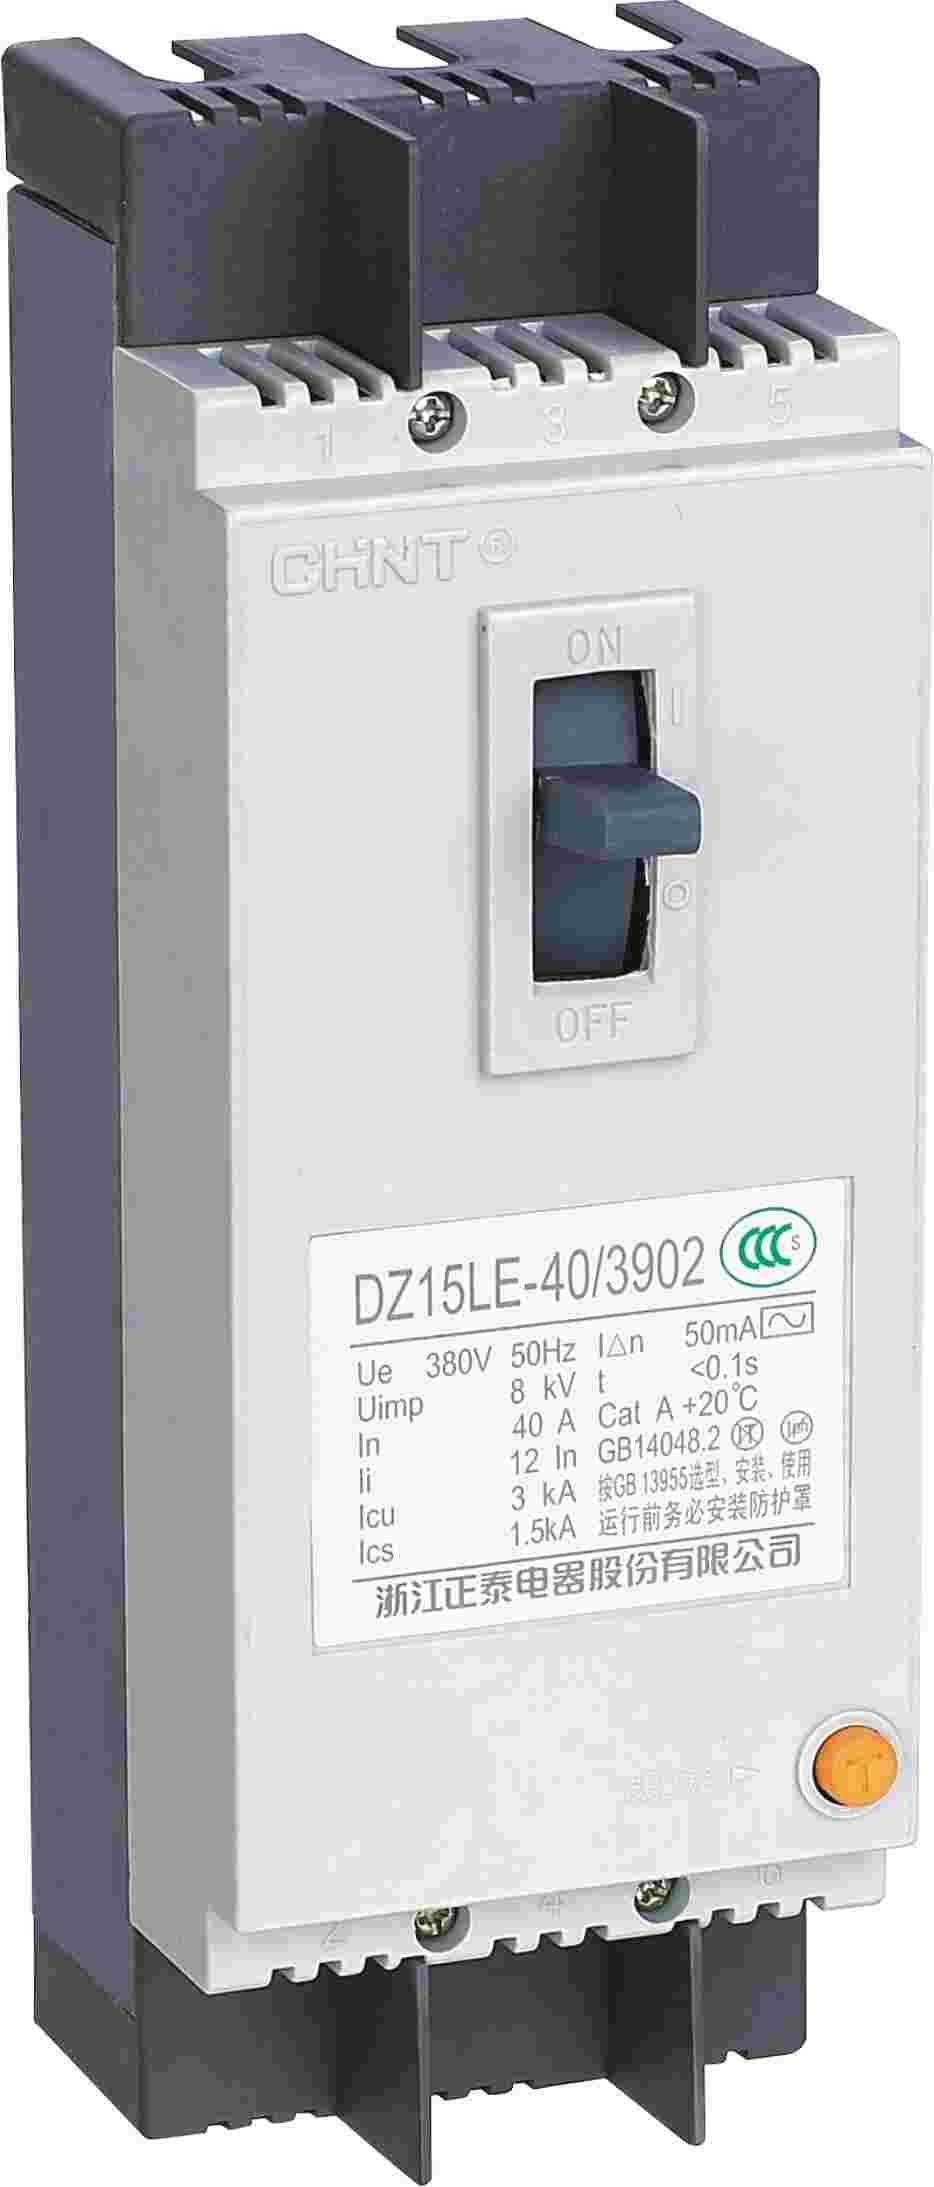 DZ15LE-40 3902 剩余电流动作断路器侧俯图.png